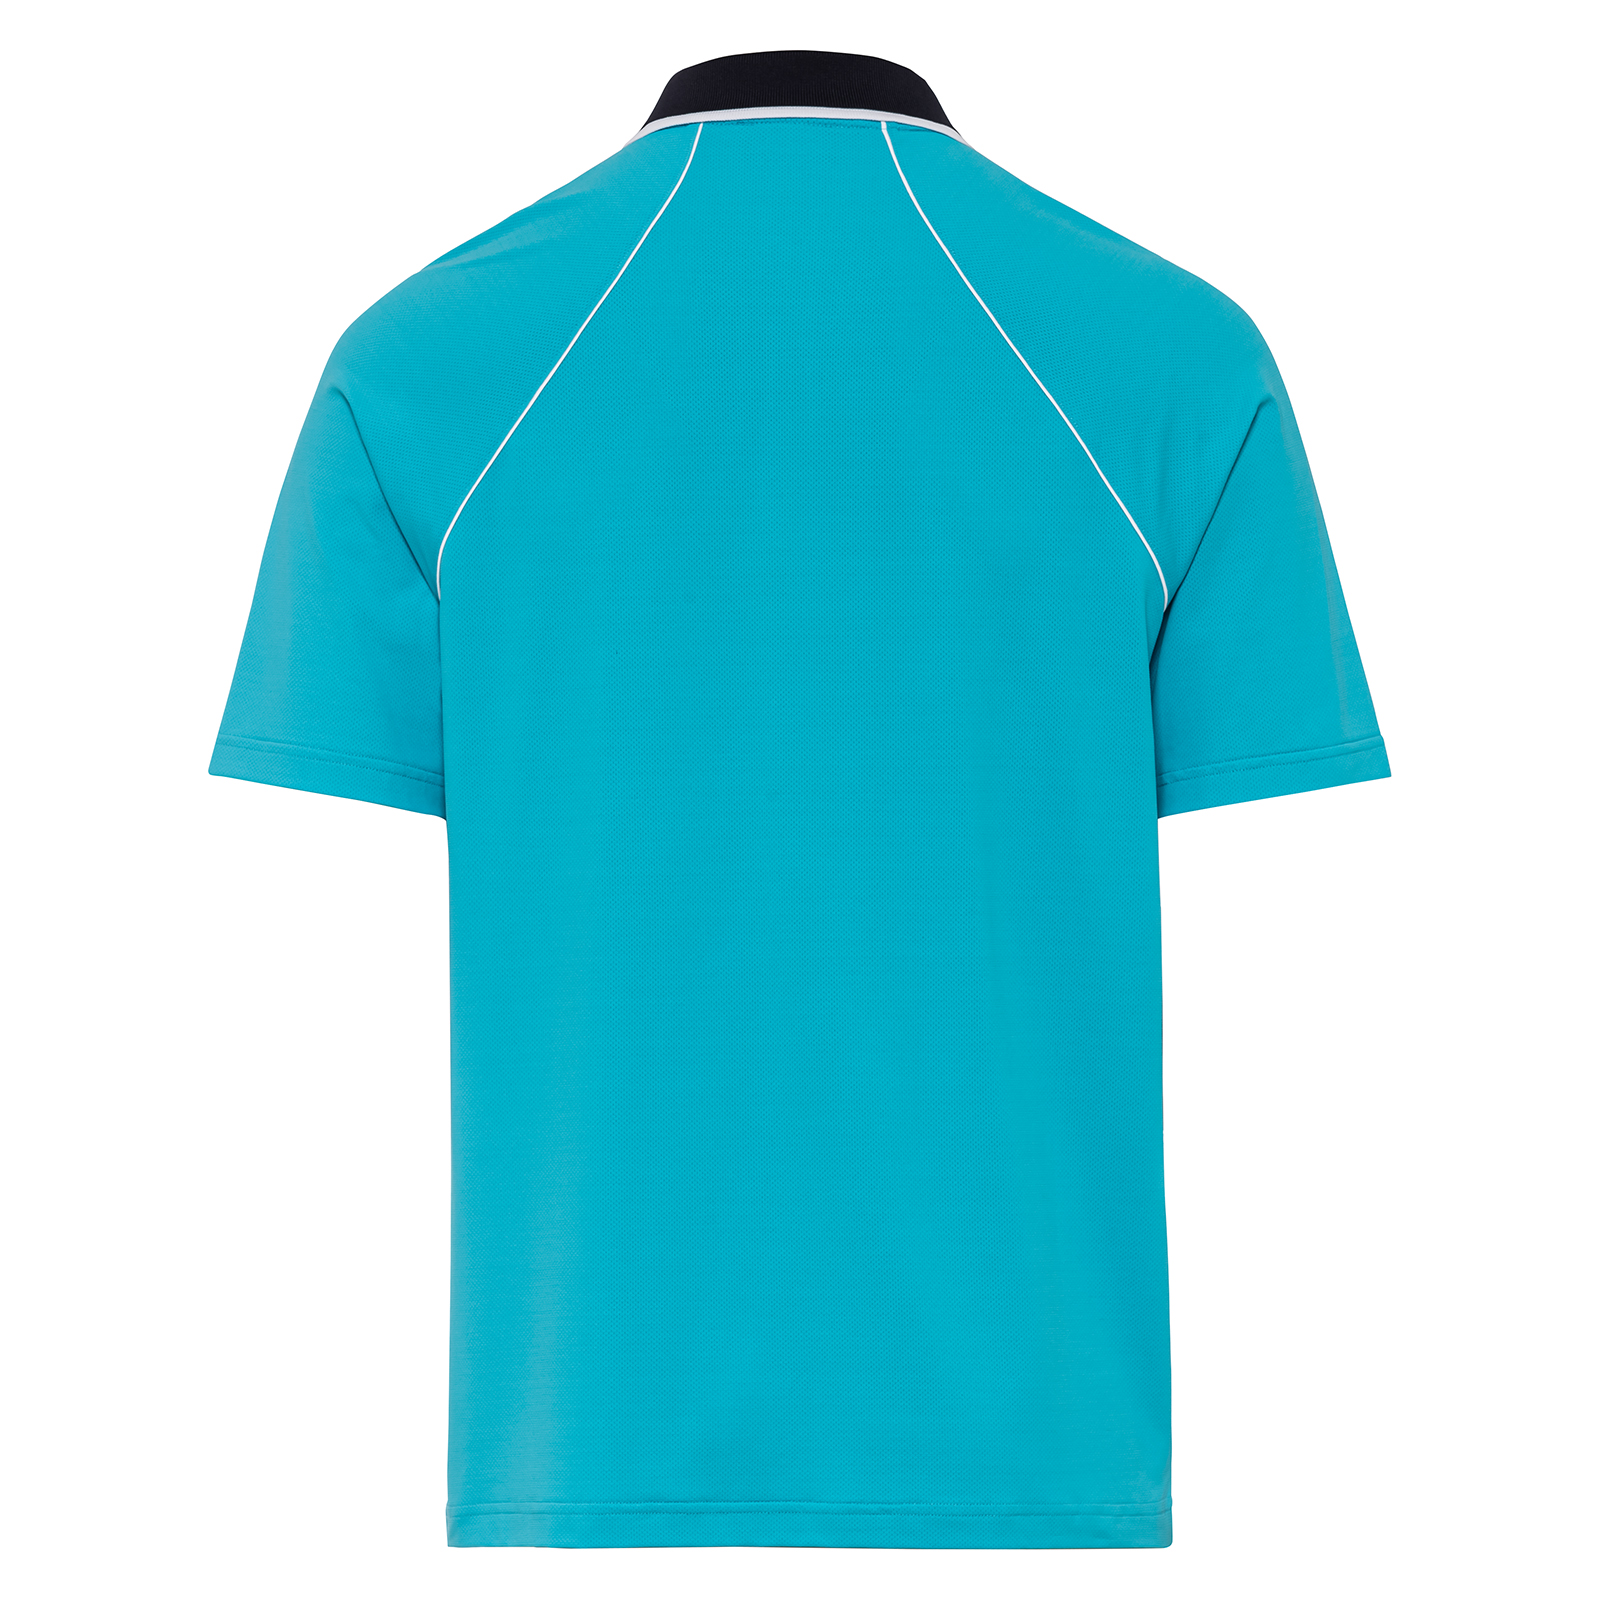 Men's stretch golf polo shirt